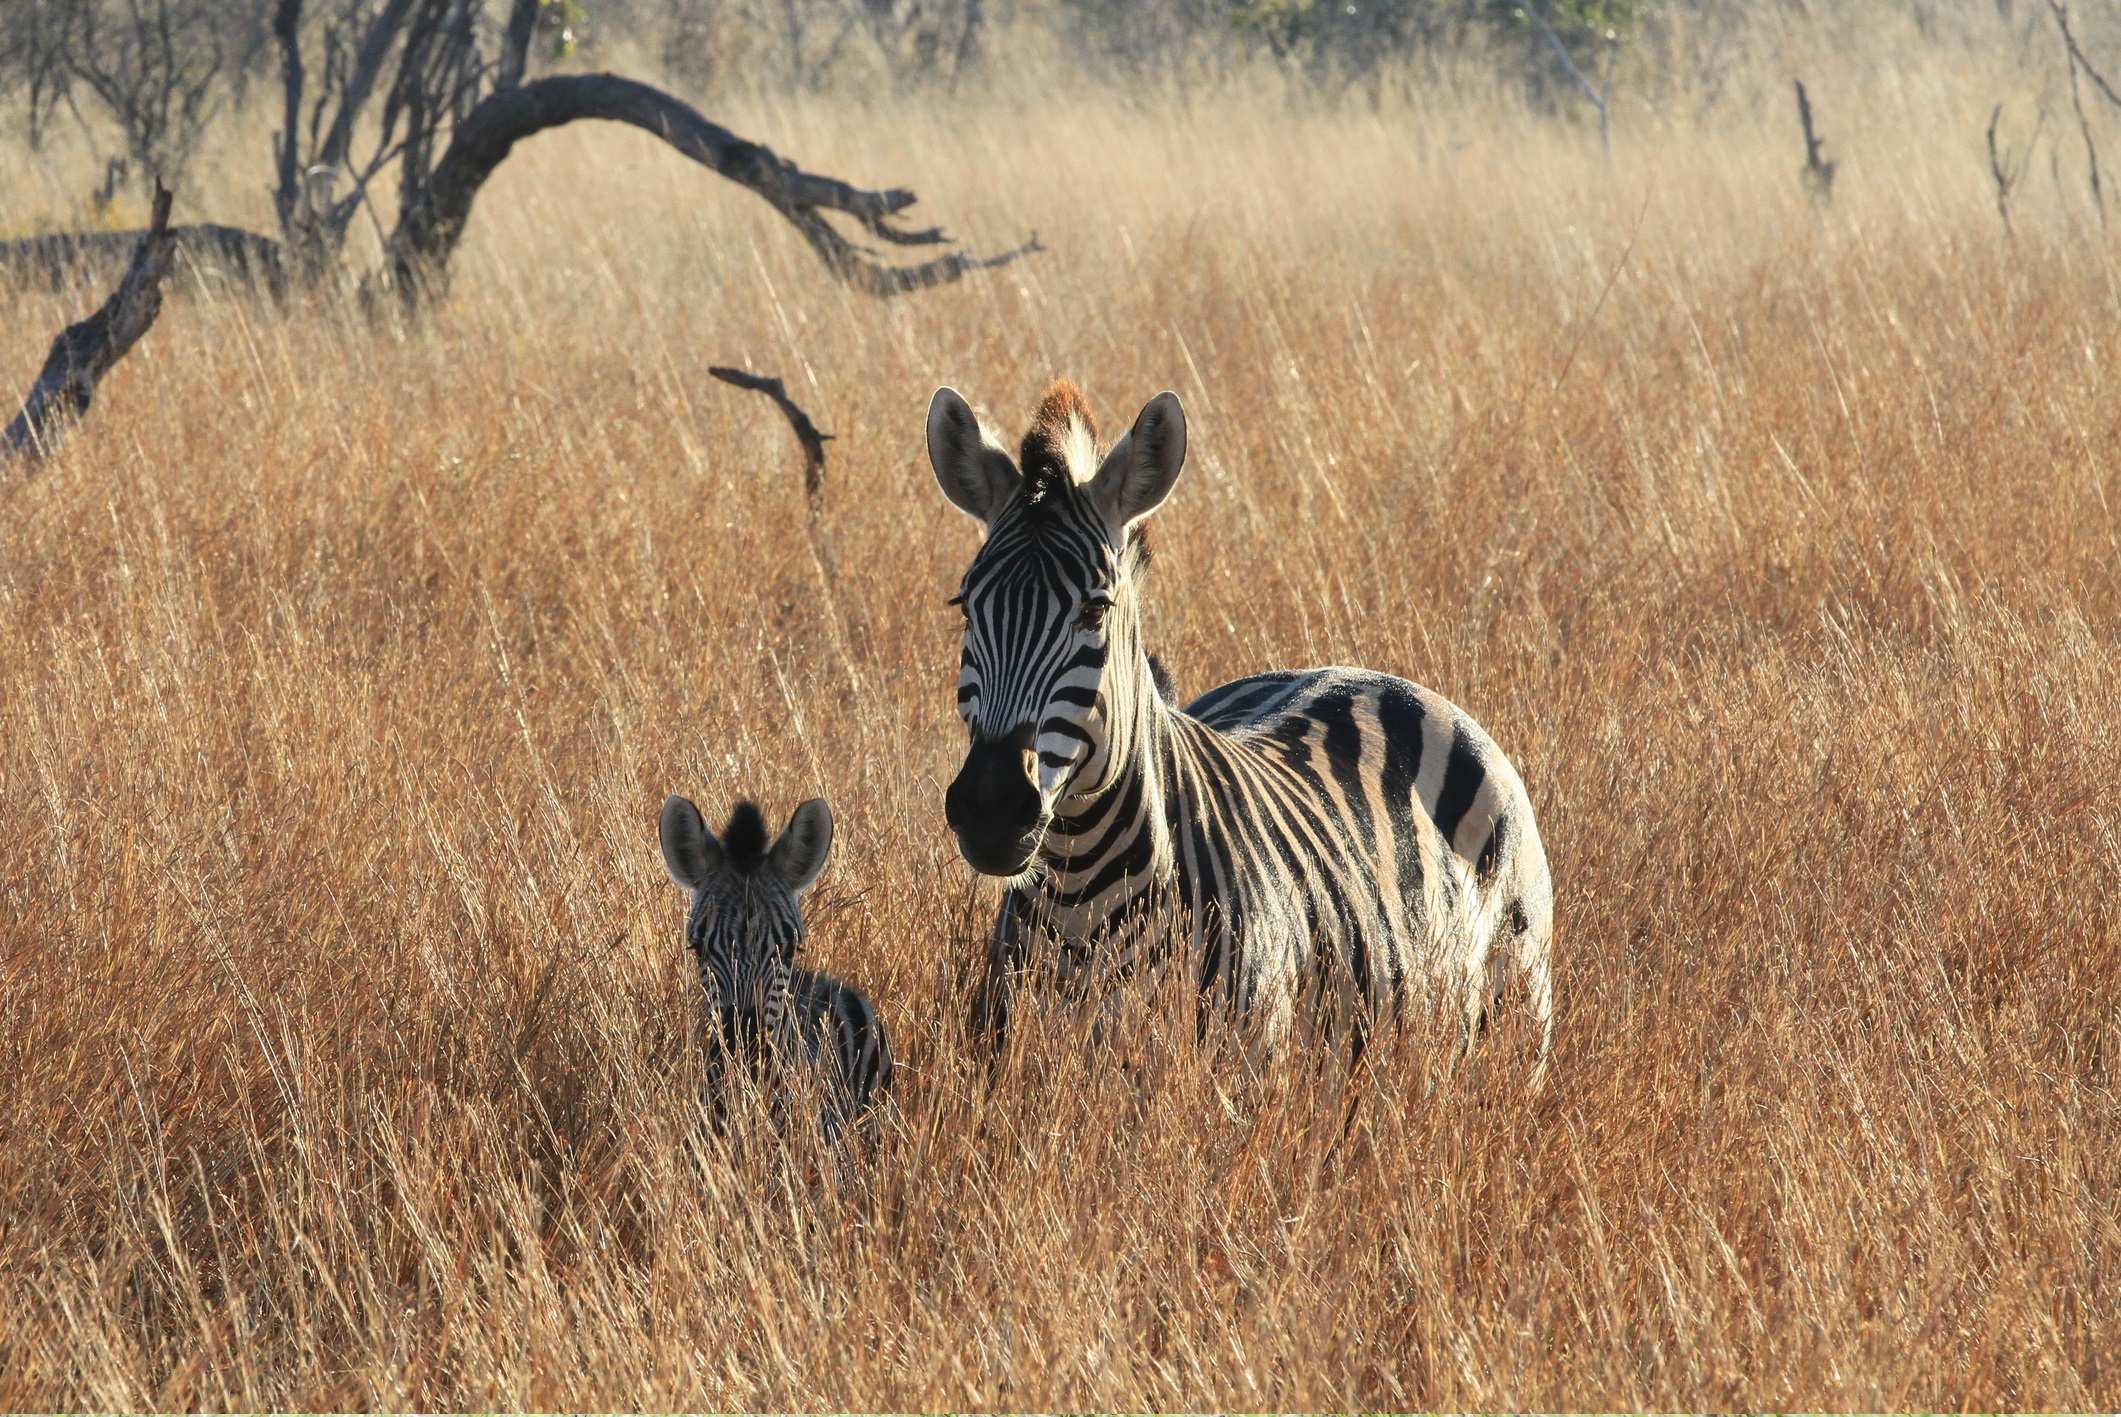 Национален парк Хванге, Зимбабве<br />
<br />
Този парк има най-голямата концентрация на големи земни животни от всяко друго място на планетата, но е посещаван от толкова малко туристи, че огромното слоново население (приблизително 46 000) превъзхожда чуждите посетители с почти 200 на един. Хванге е също така основна територия на хищници със „супер прайдове“, наброяващи повече от 20 лъва (достатъчно силни дори за лов на млади слонове), хиени, леопарди.